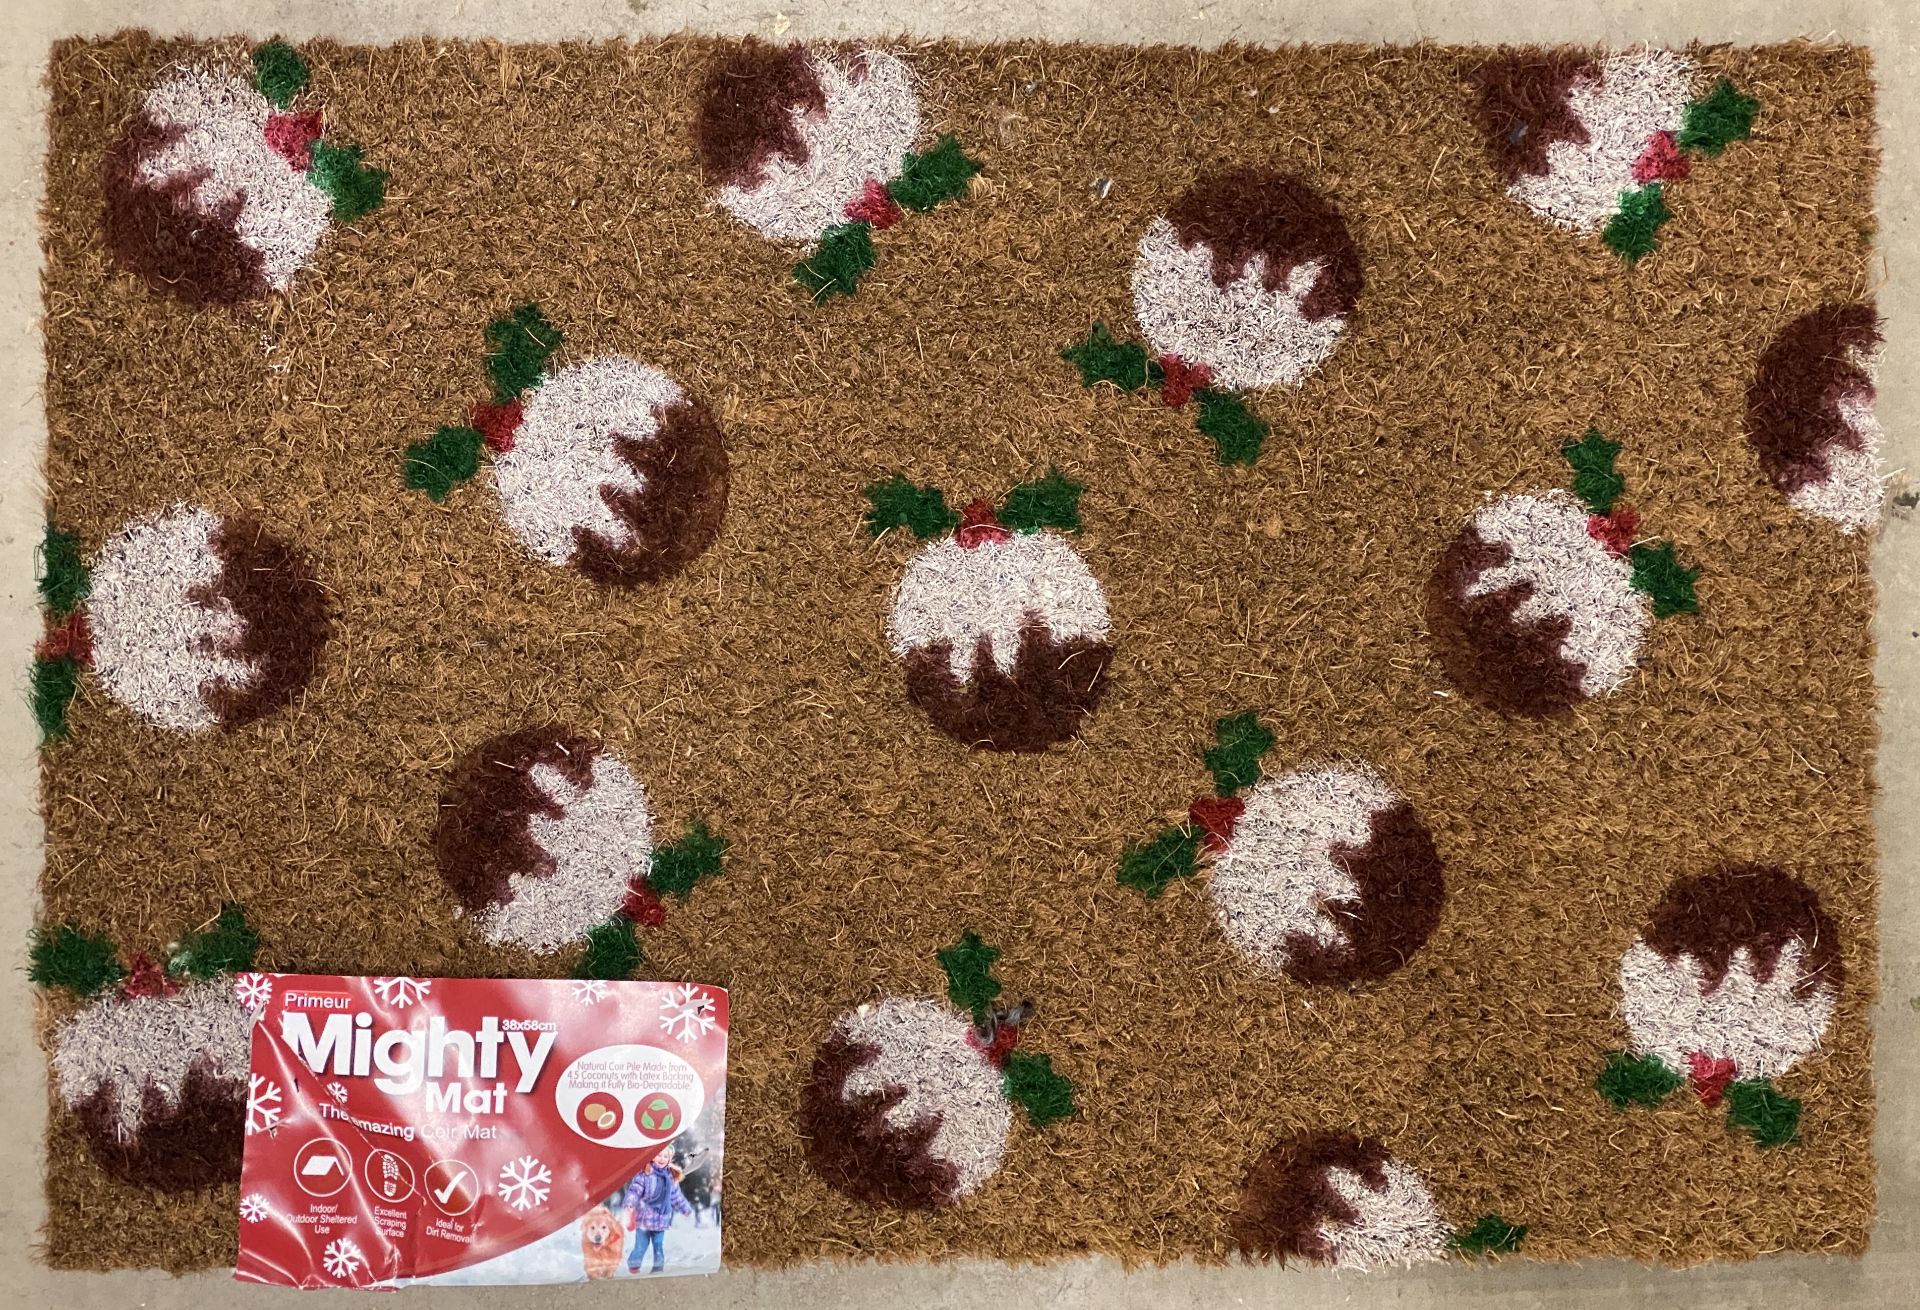 30 x Mighty Mat 'Christmas Pudding' Coir Mats - 38cm x 58cm - 5 outer packs (J09)